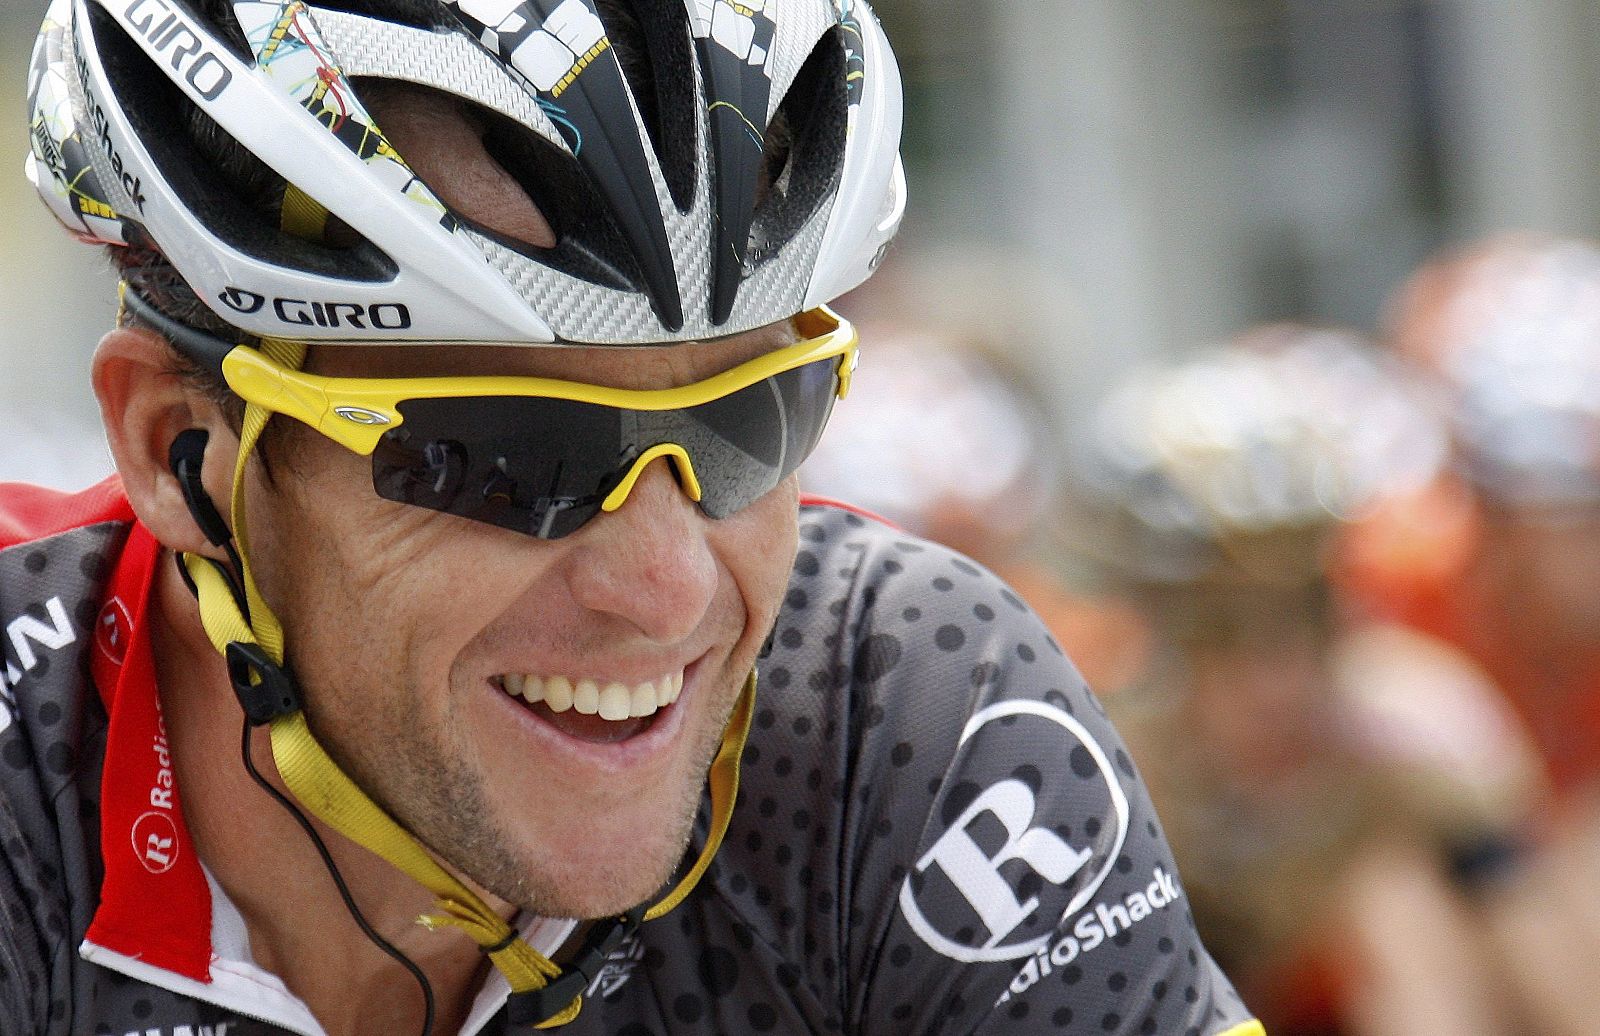 Lance Armstrong, en una imagen de archivo.